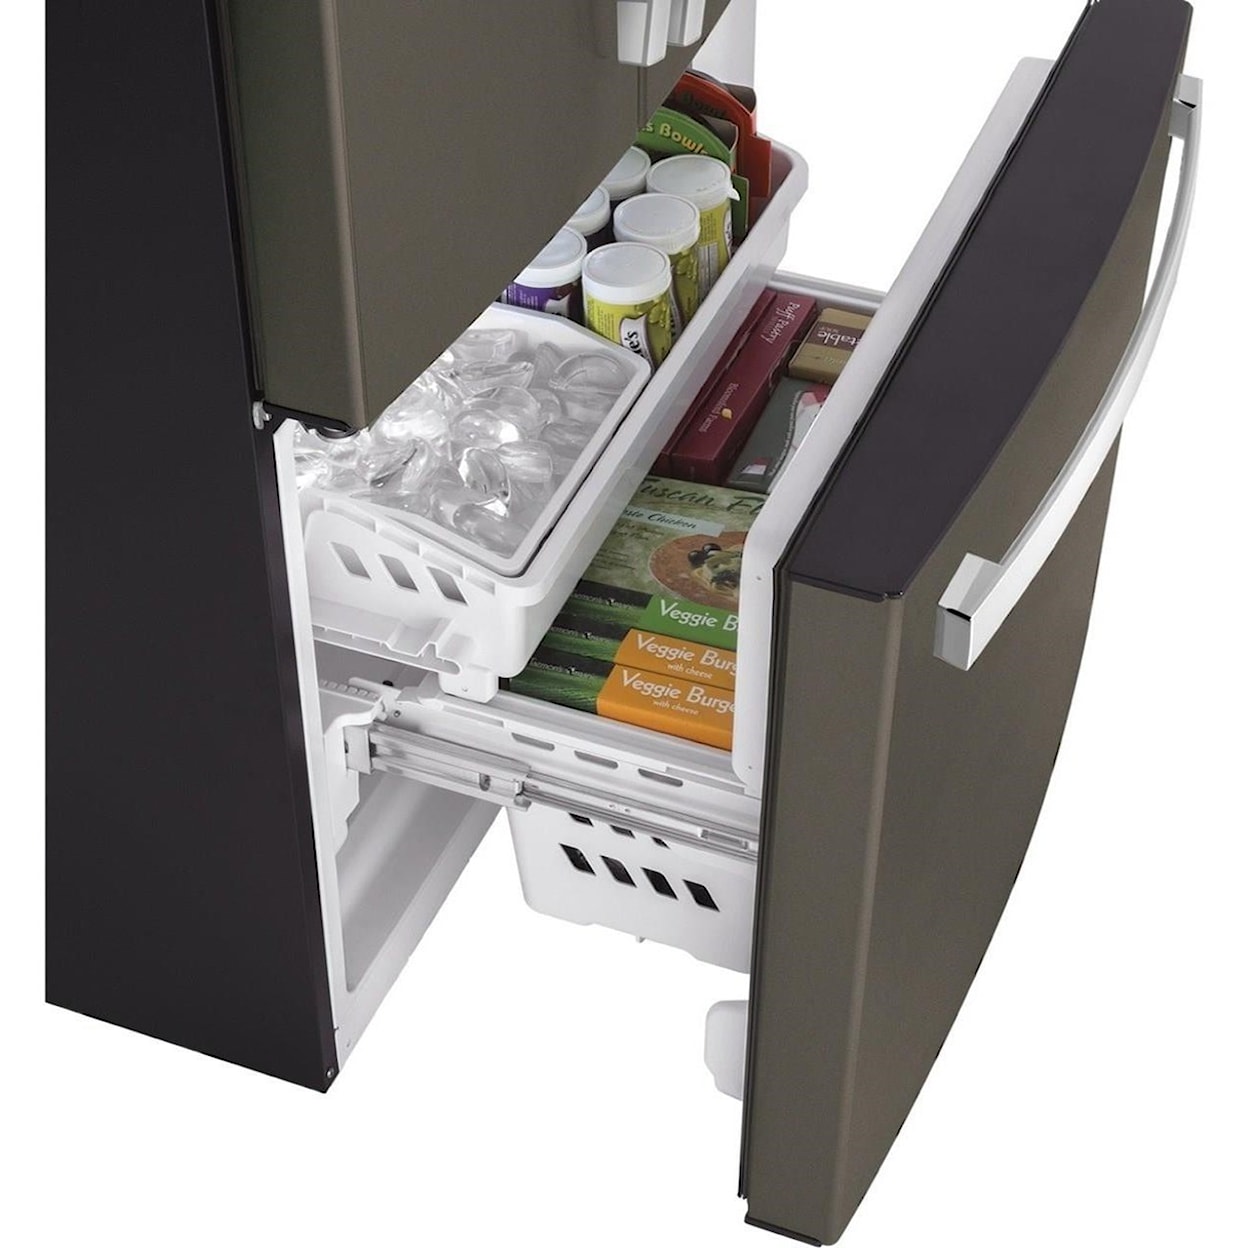 GE Appliances GE French Door Refrigerators GE® ENERGY STAR® 17.5 Cu. Ft. Counter-Depth 